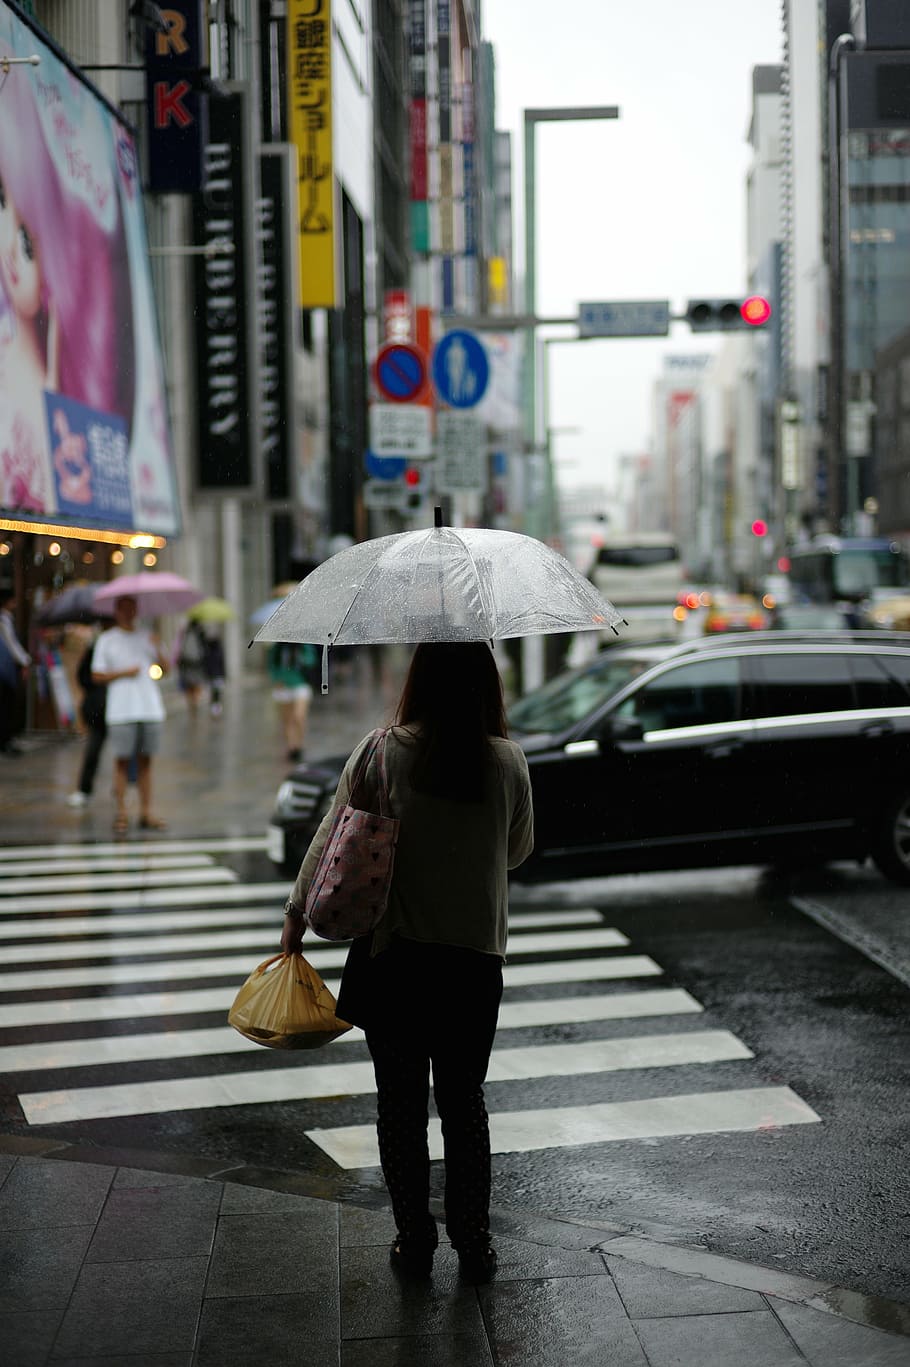 woman, standing, umbrella, pedestrian, lane, car, road screenshot, city, street, intersection